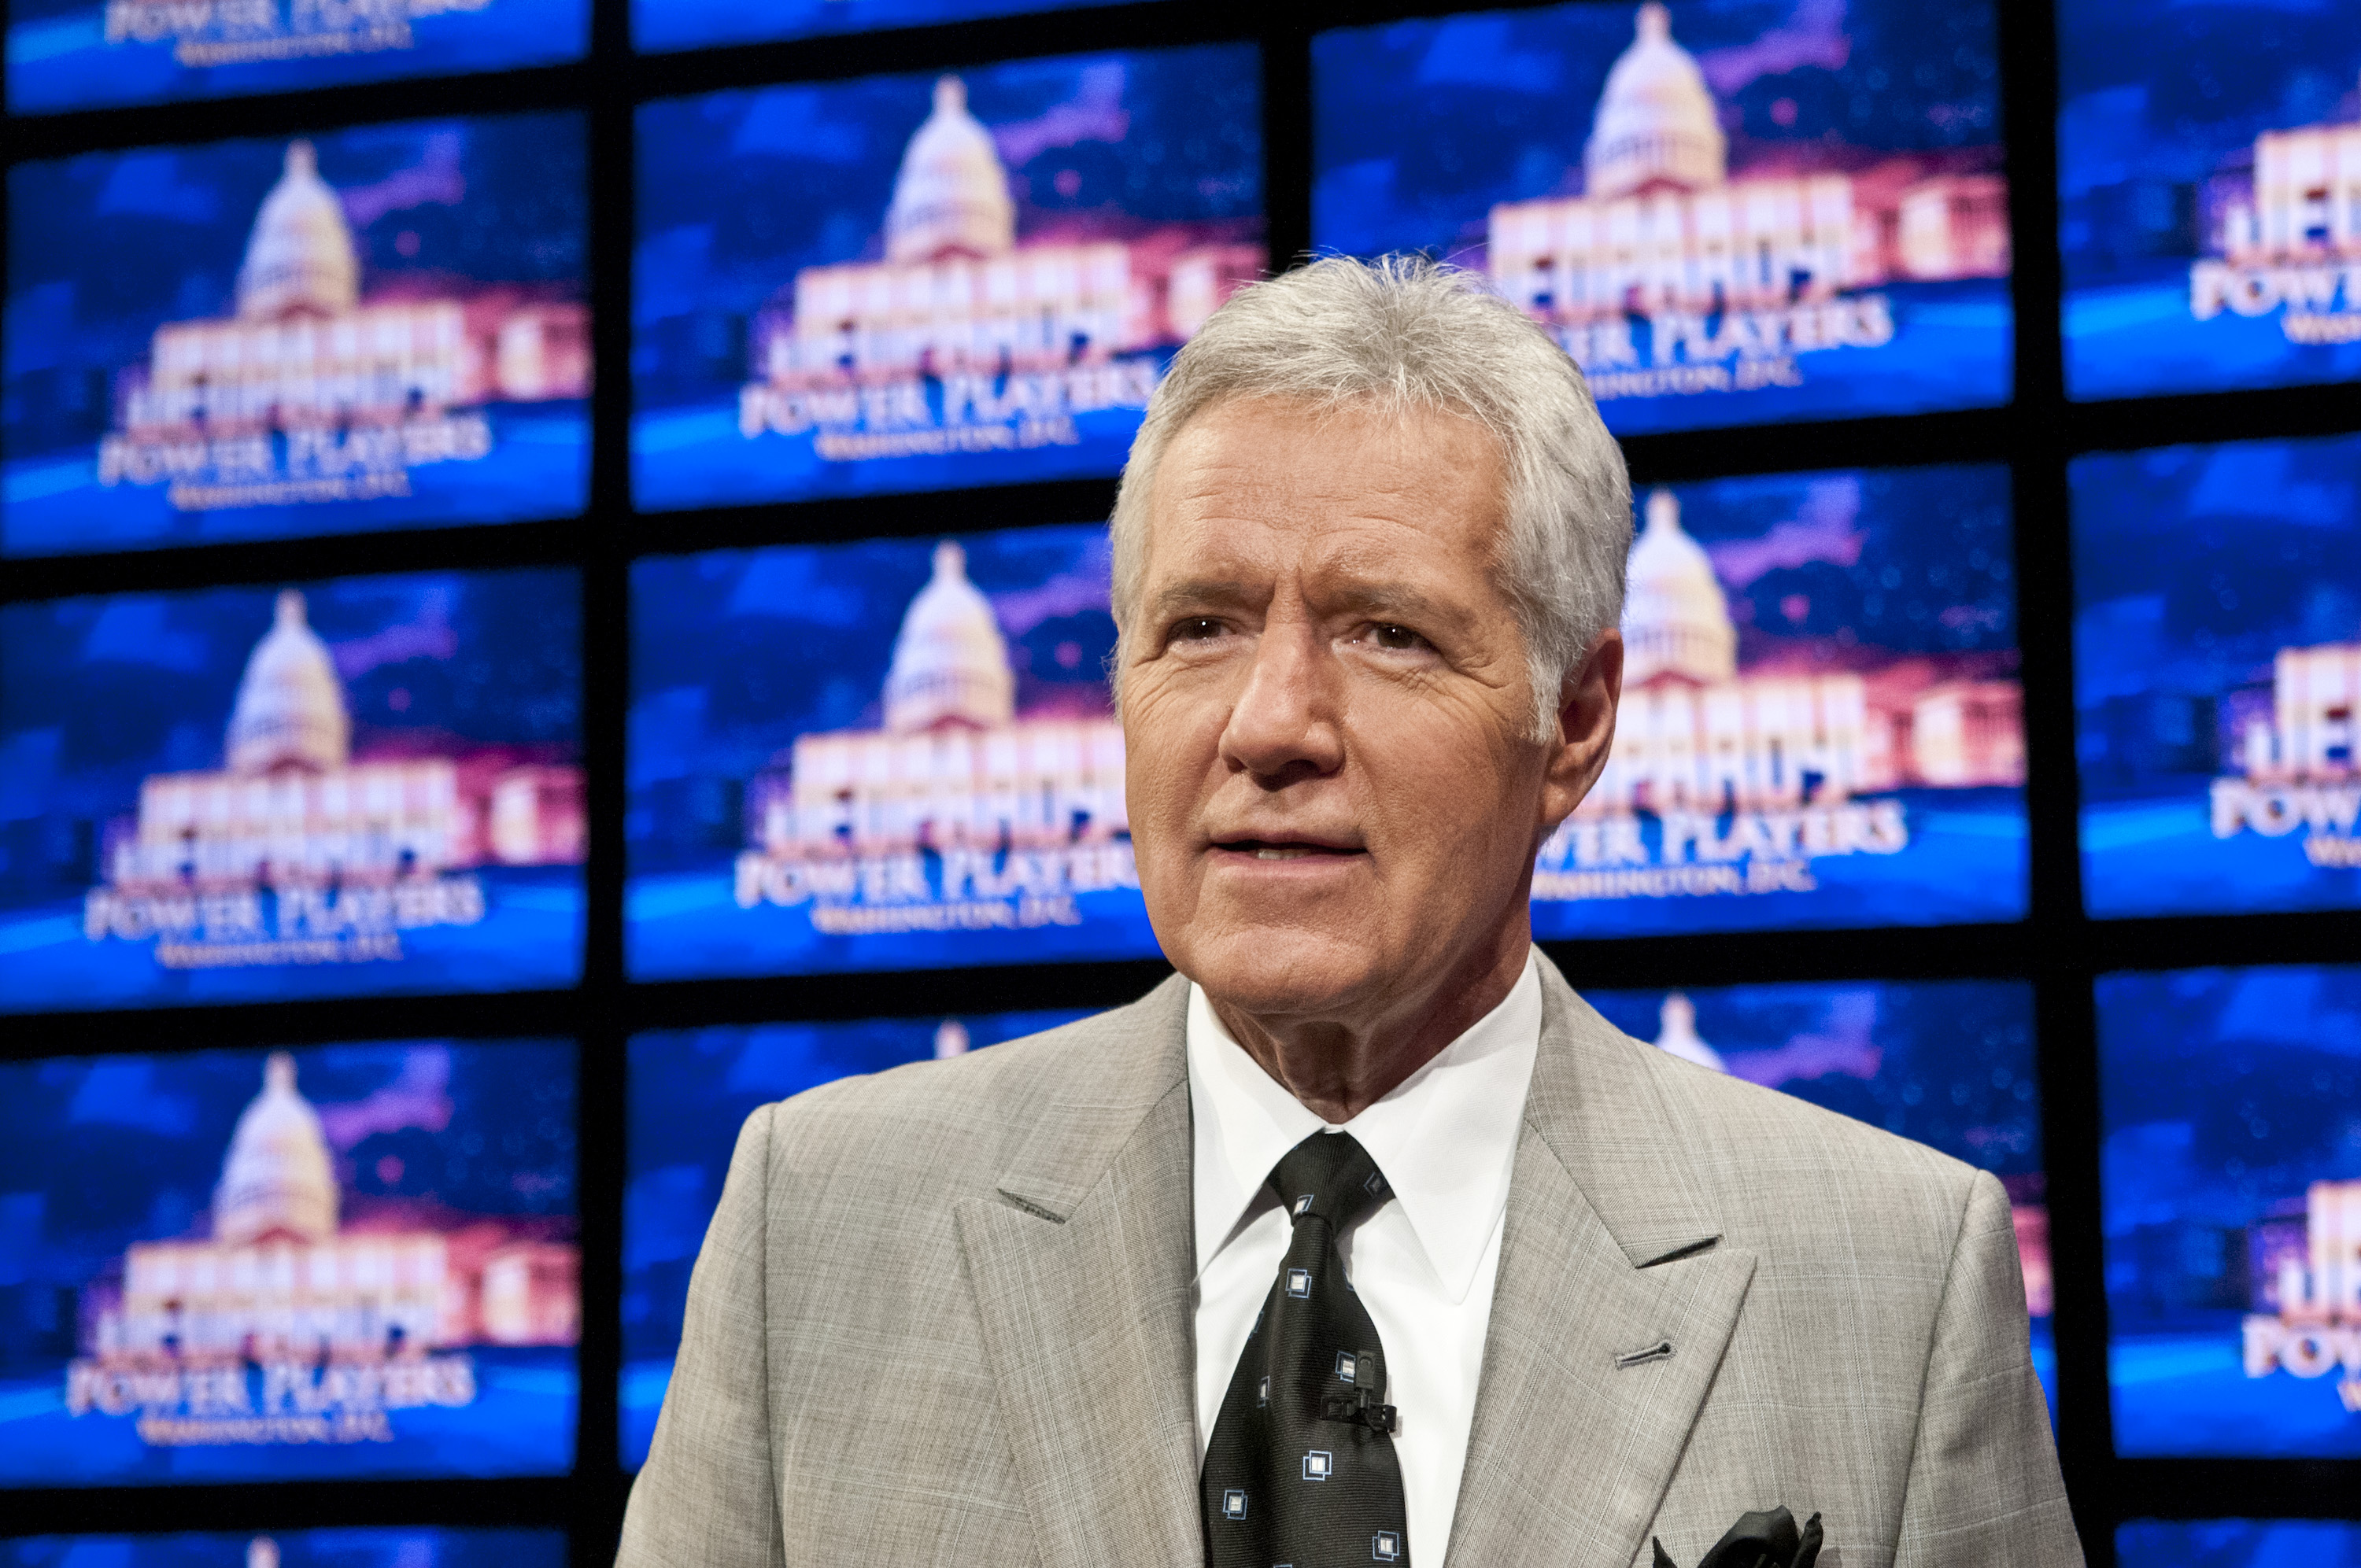 'Jeopardy!' host Alex Trebek, 1940 - 2020